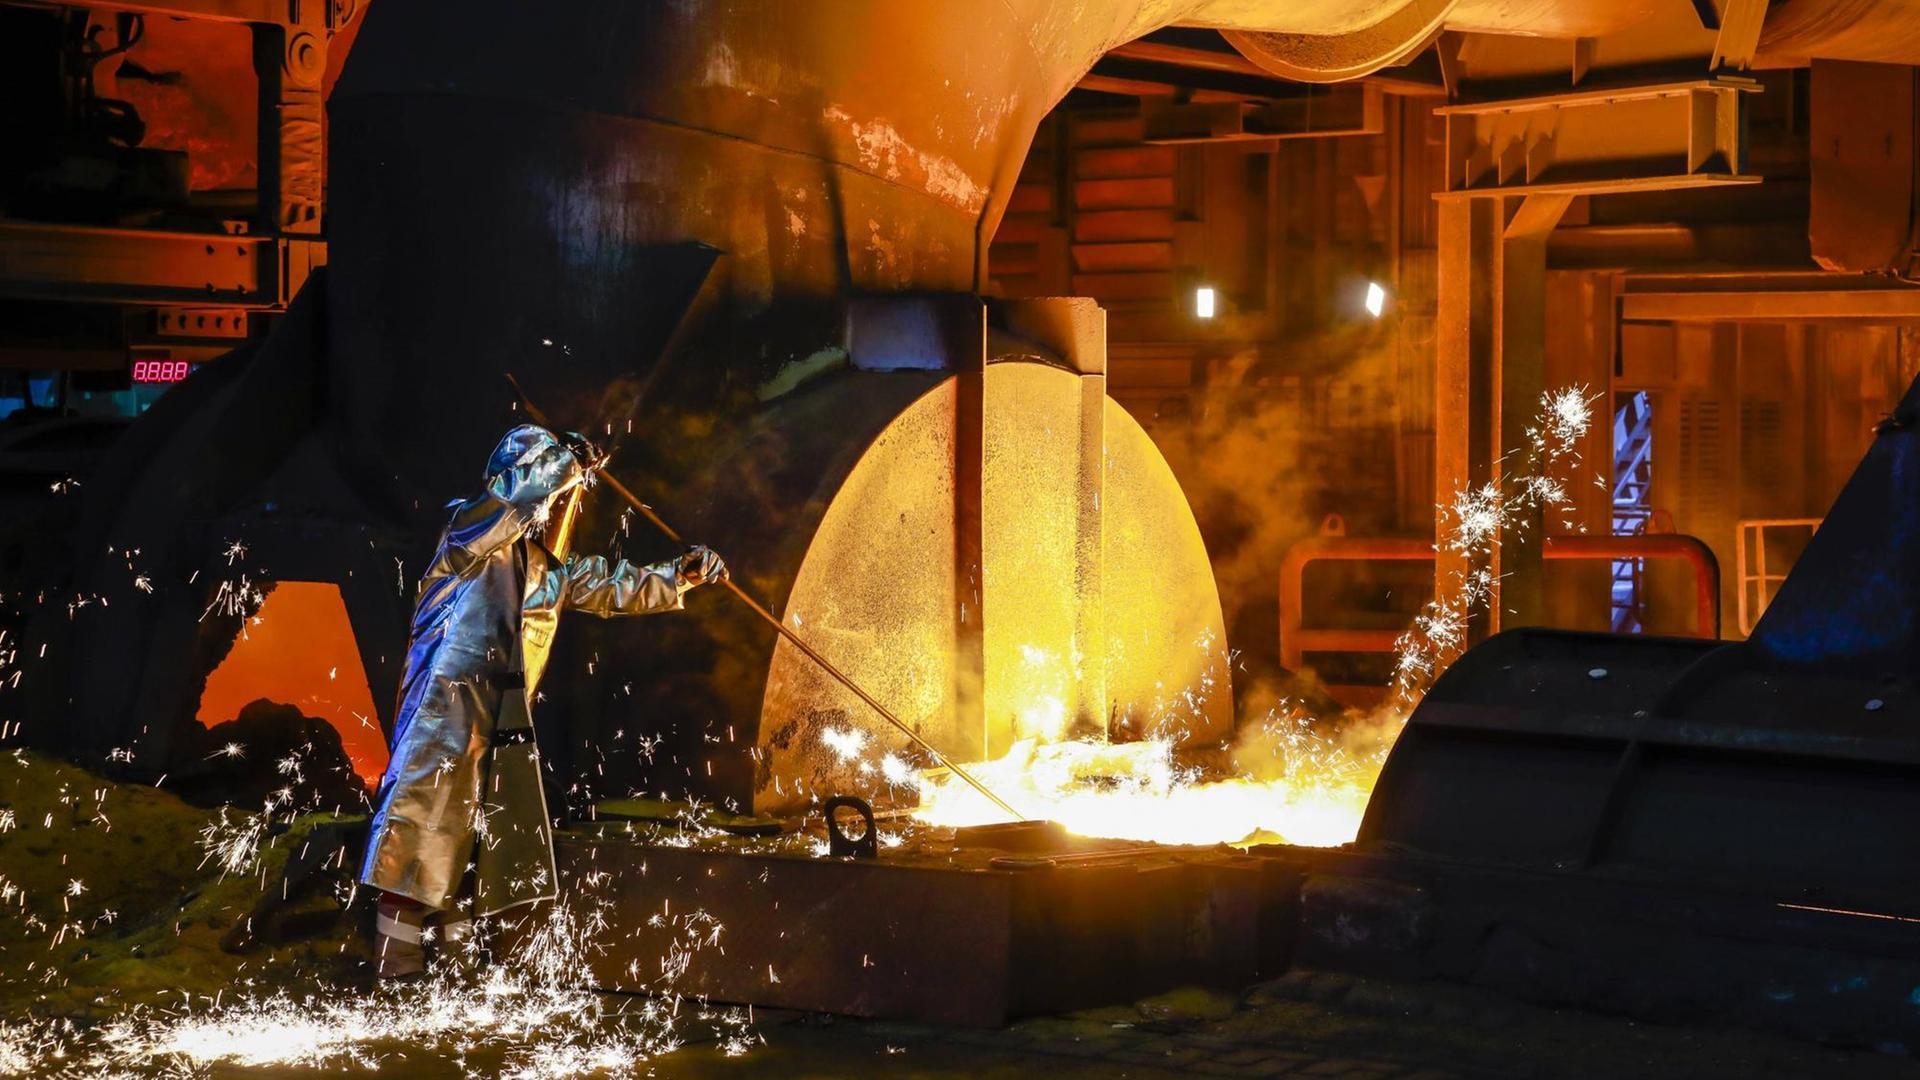 Stahlarbeiter im Schutzanzug entnimmt eine 1.500 Grad heiße Roheisenprobe beim Abstich am Hochofen im Stahlwerk Thyssen Krupp Steel in Duisburg, 15.04. 2019